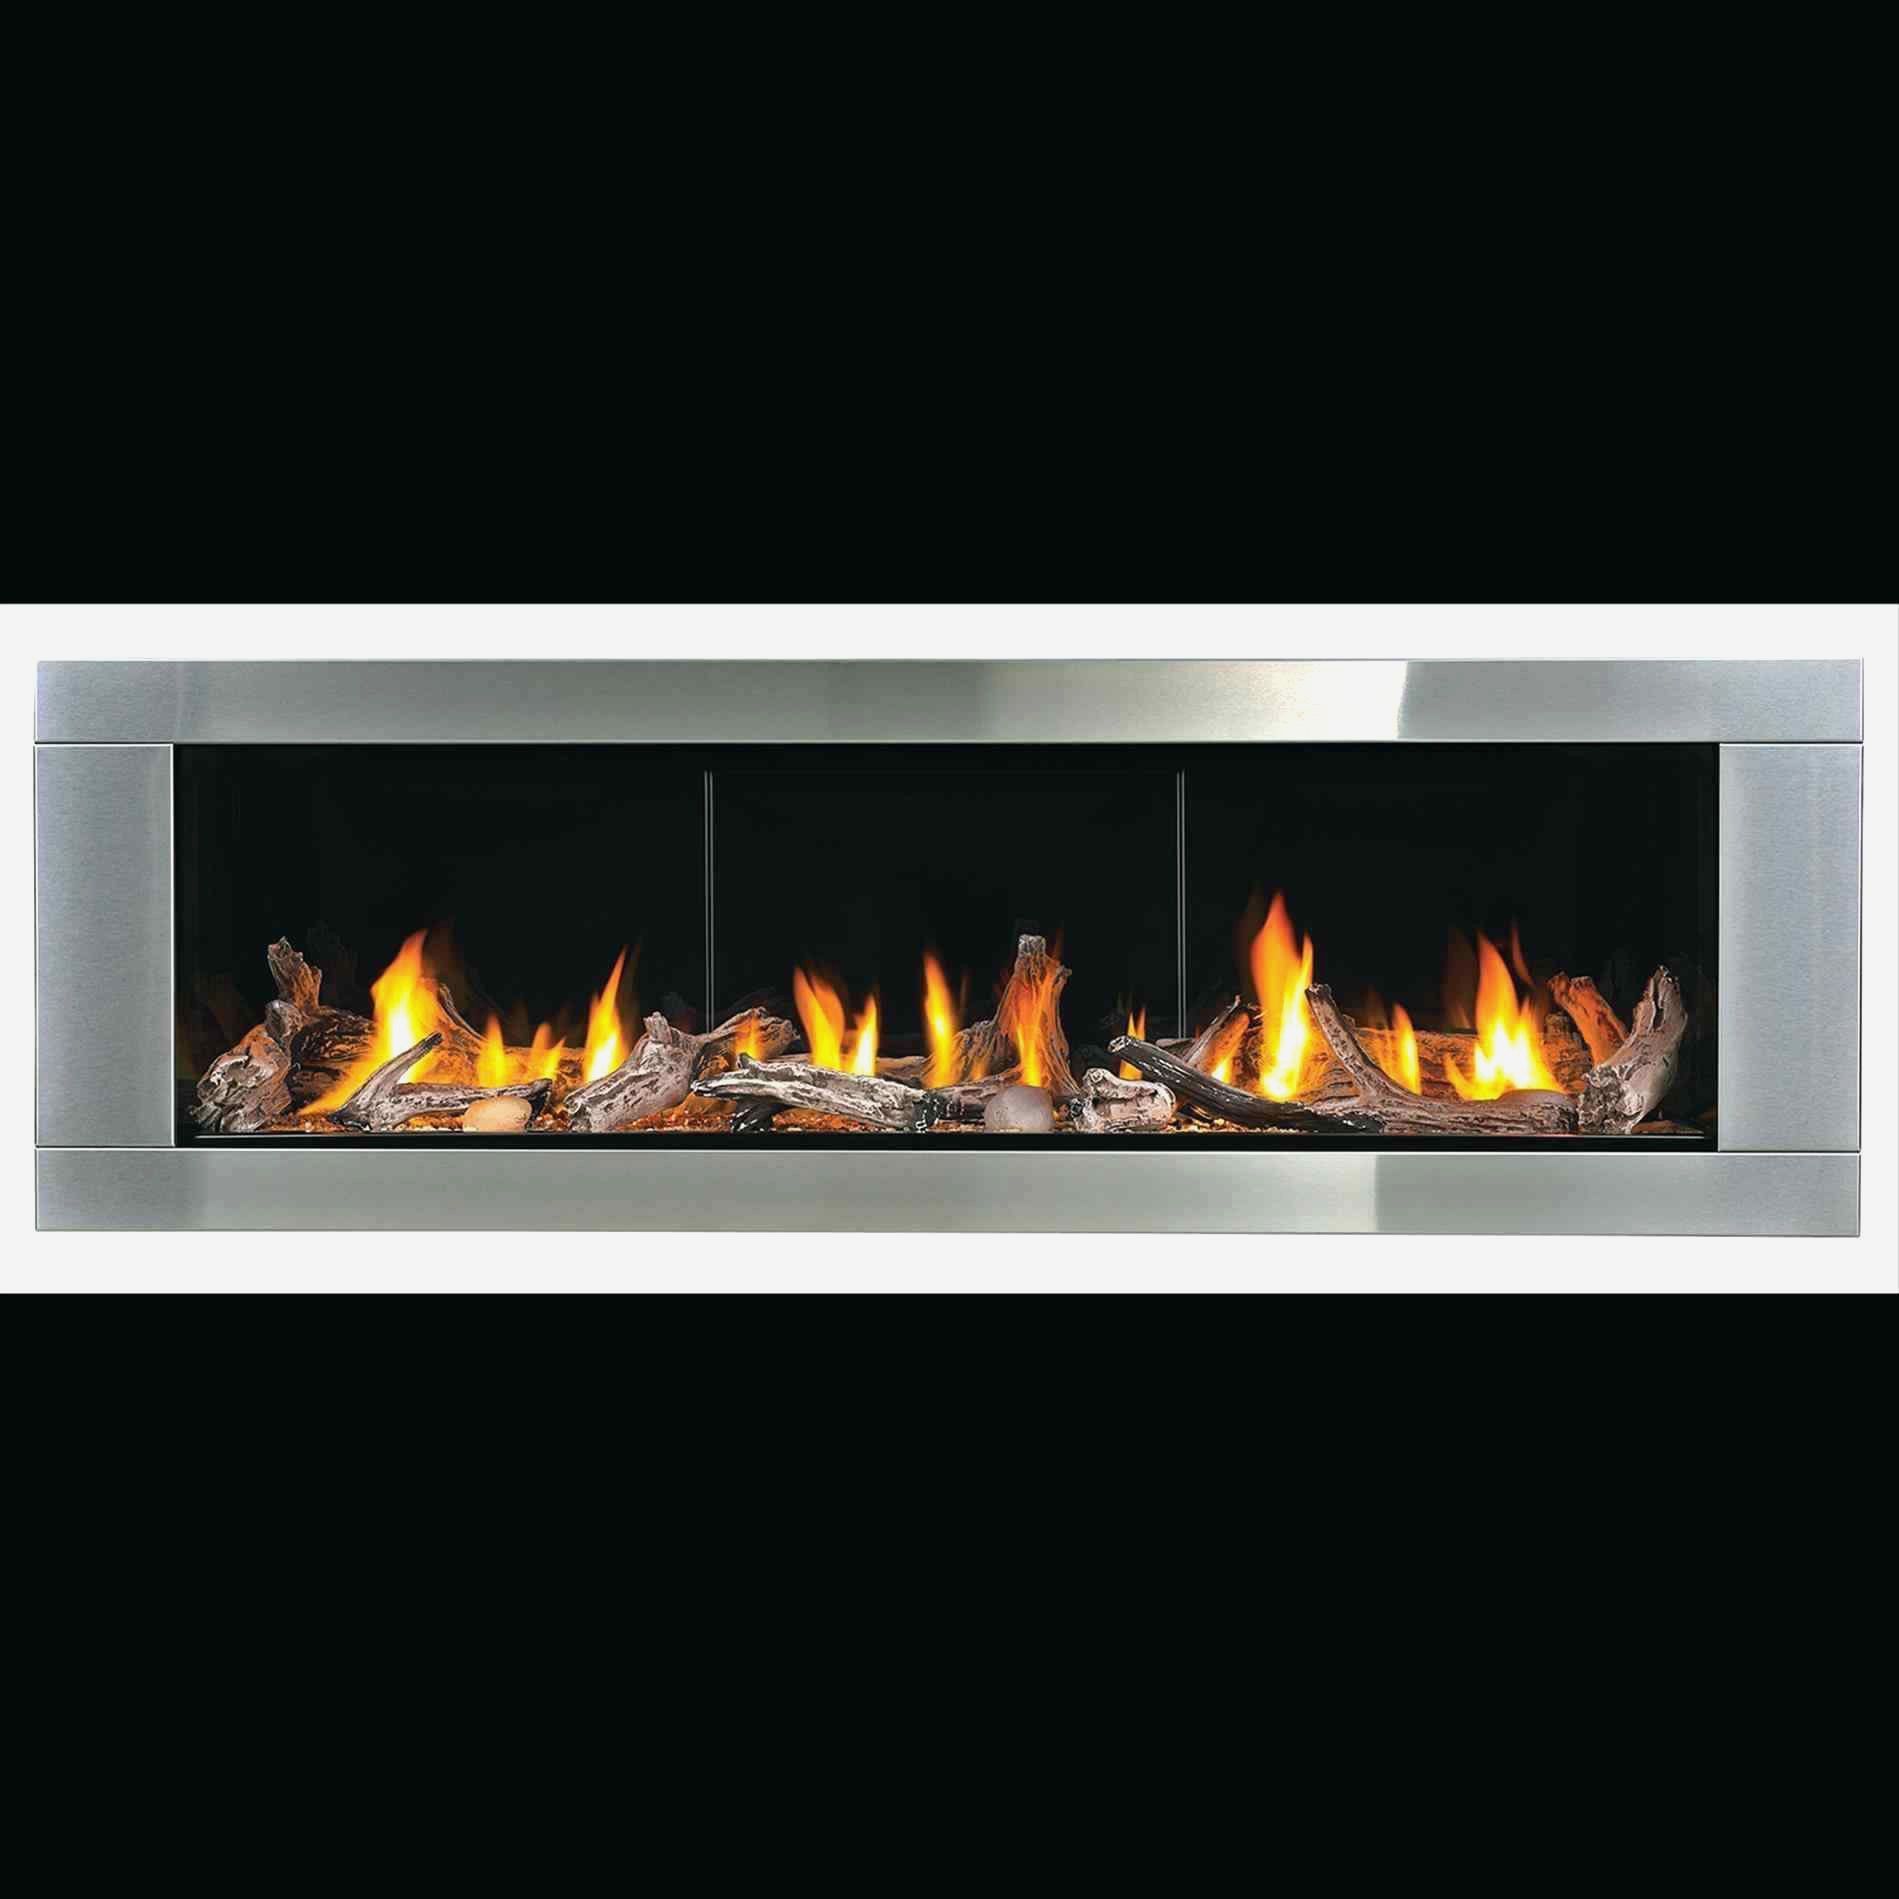 Magikflame Electric Fireplace New Ventless Gas Kamin Geruch Kachelöfen Kachelöfen